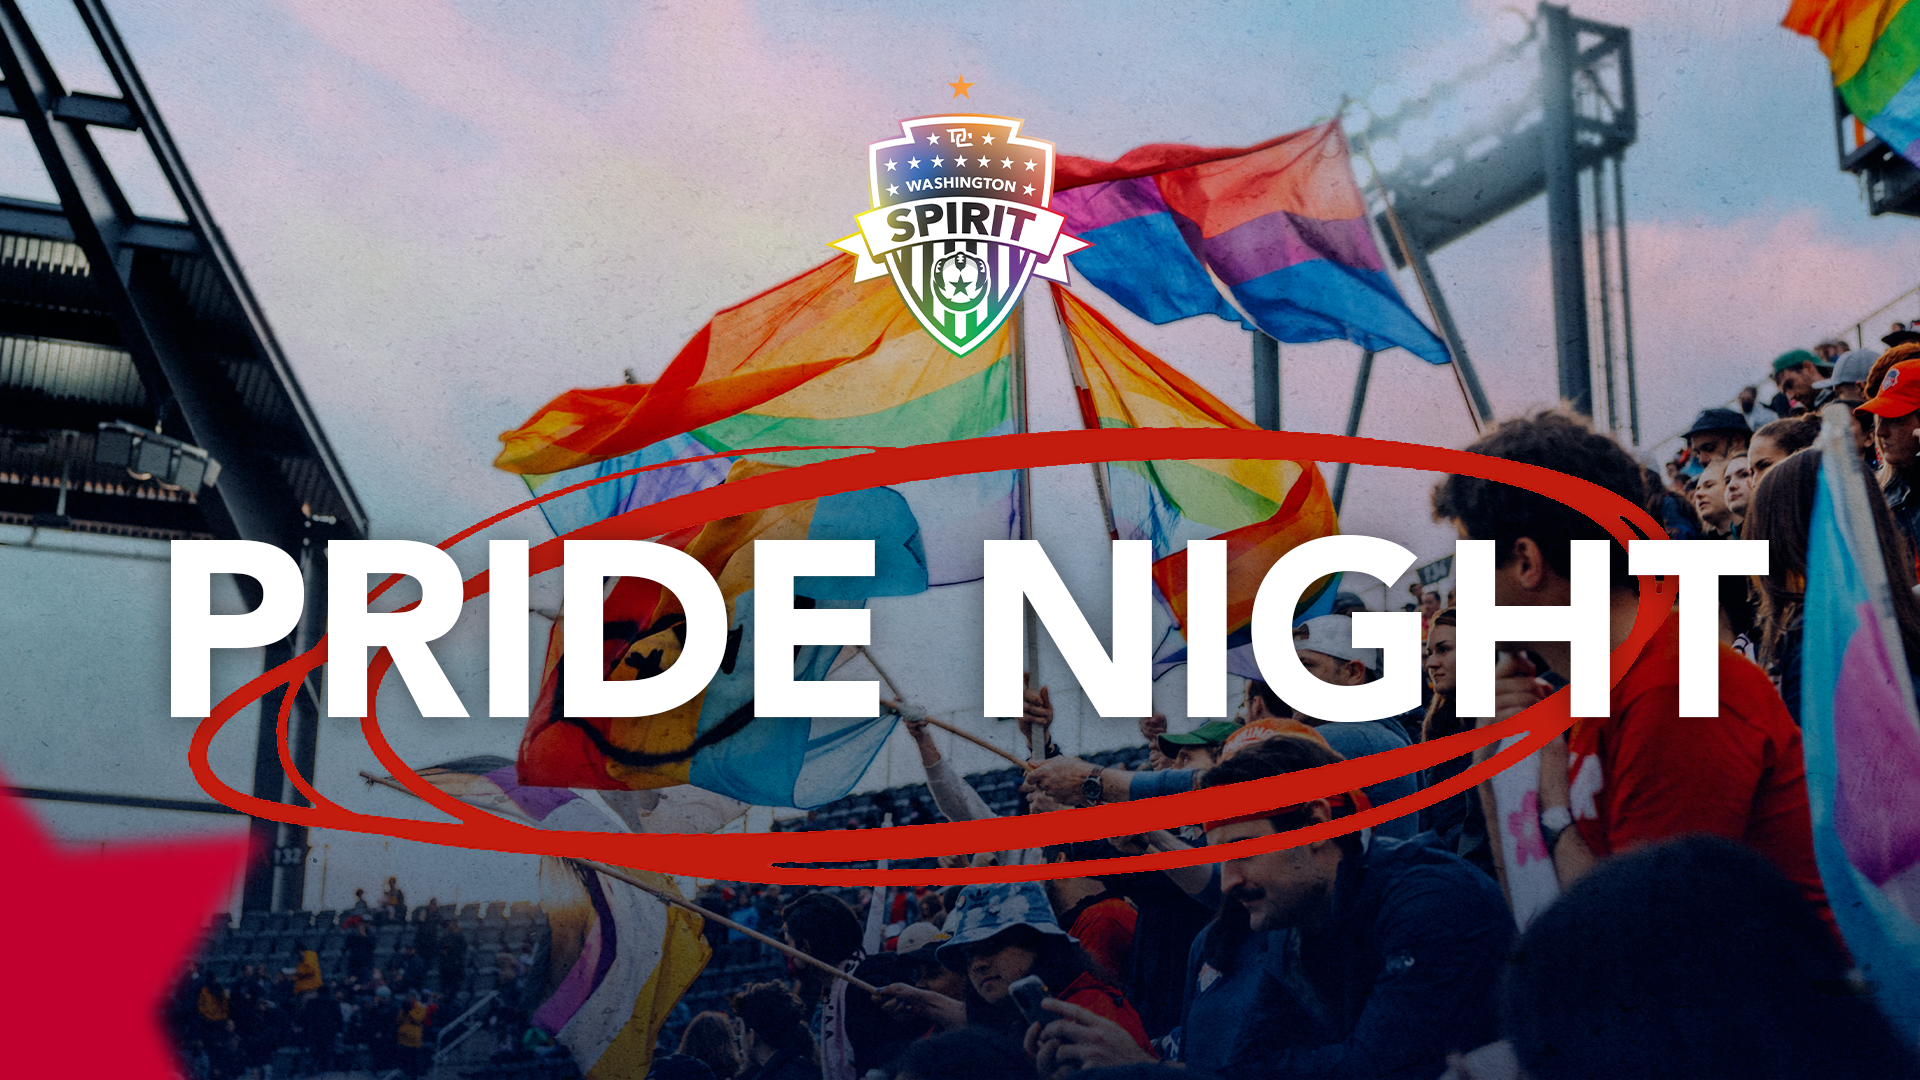 Washington Spirit Announces Pride Celebration Plans Featured Image